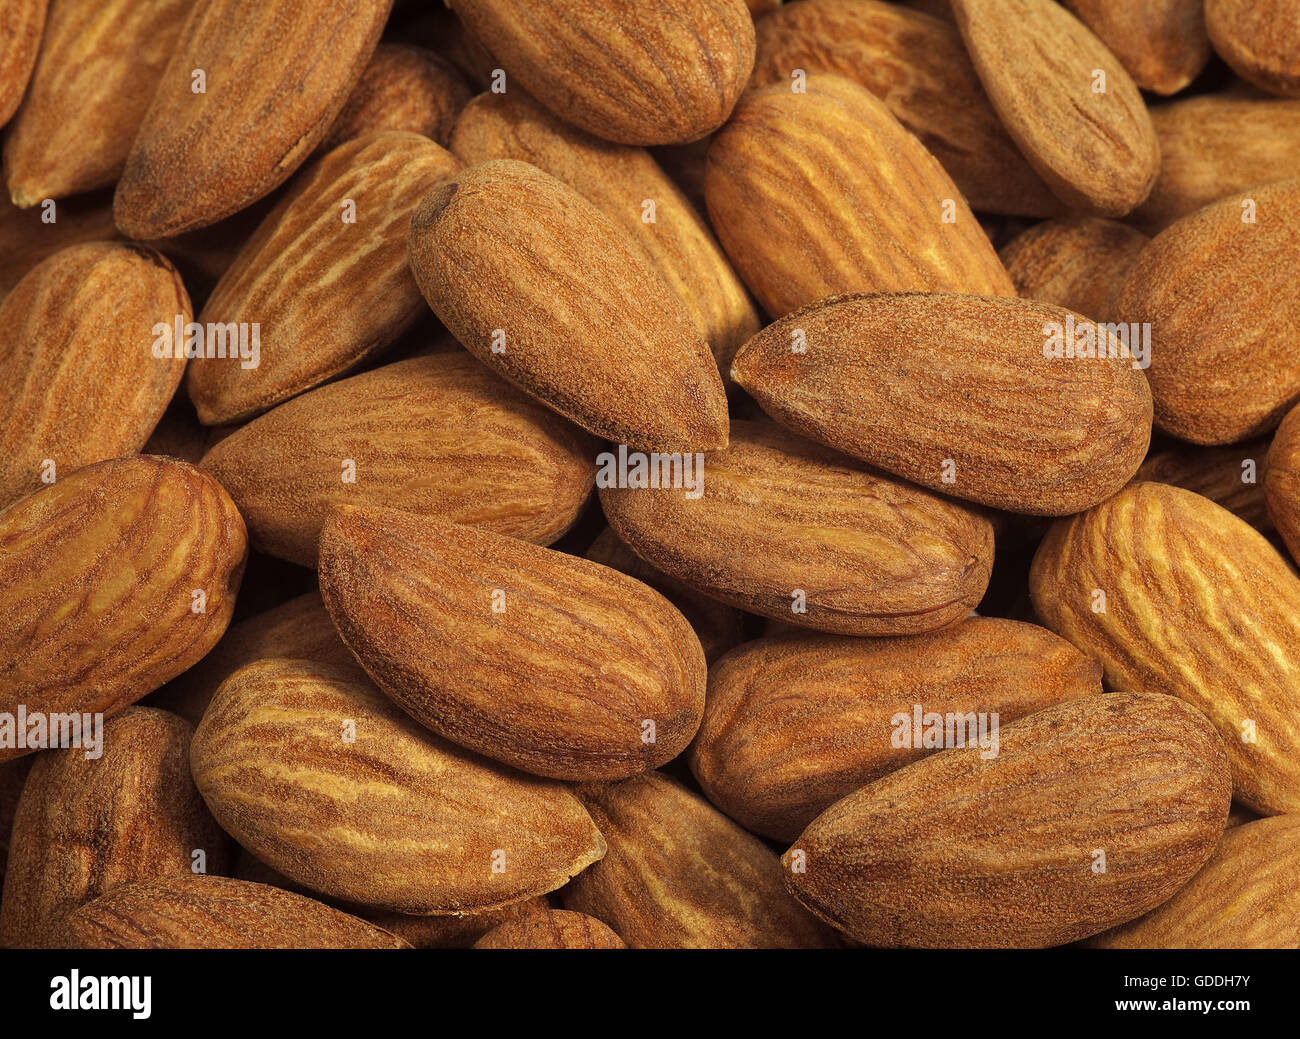 Dried Almonds, prunus dulcis Stock Photo